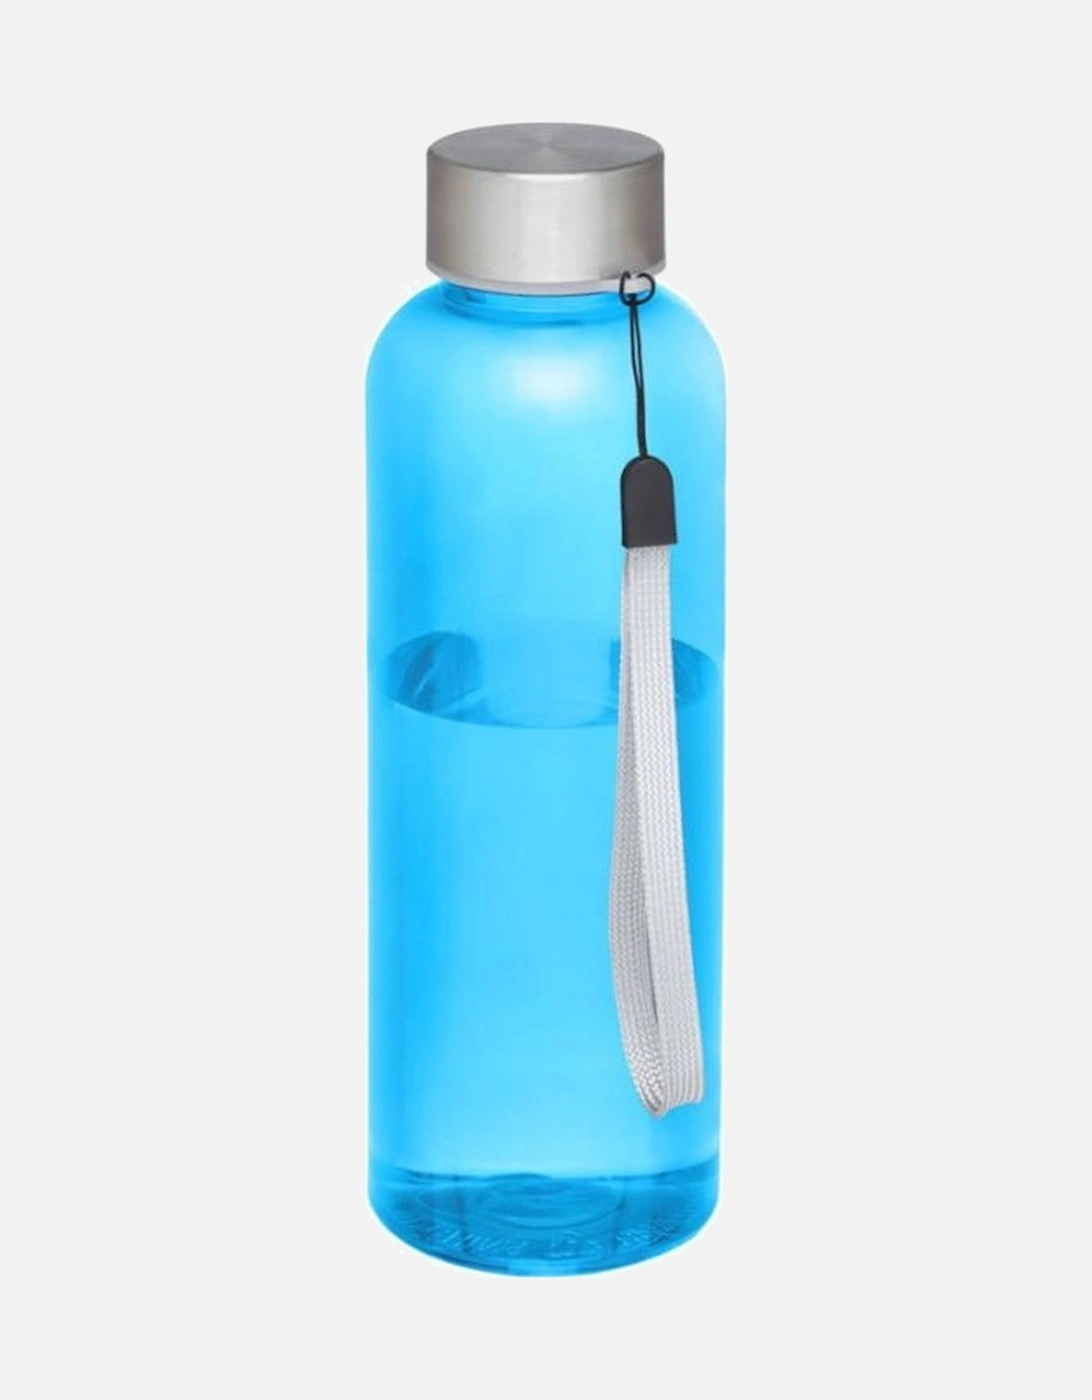 Bodhi RPET 500ml Water Bottle